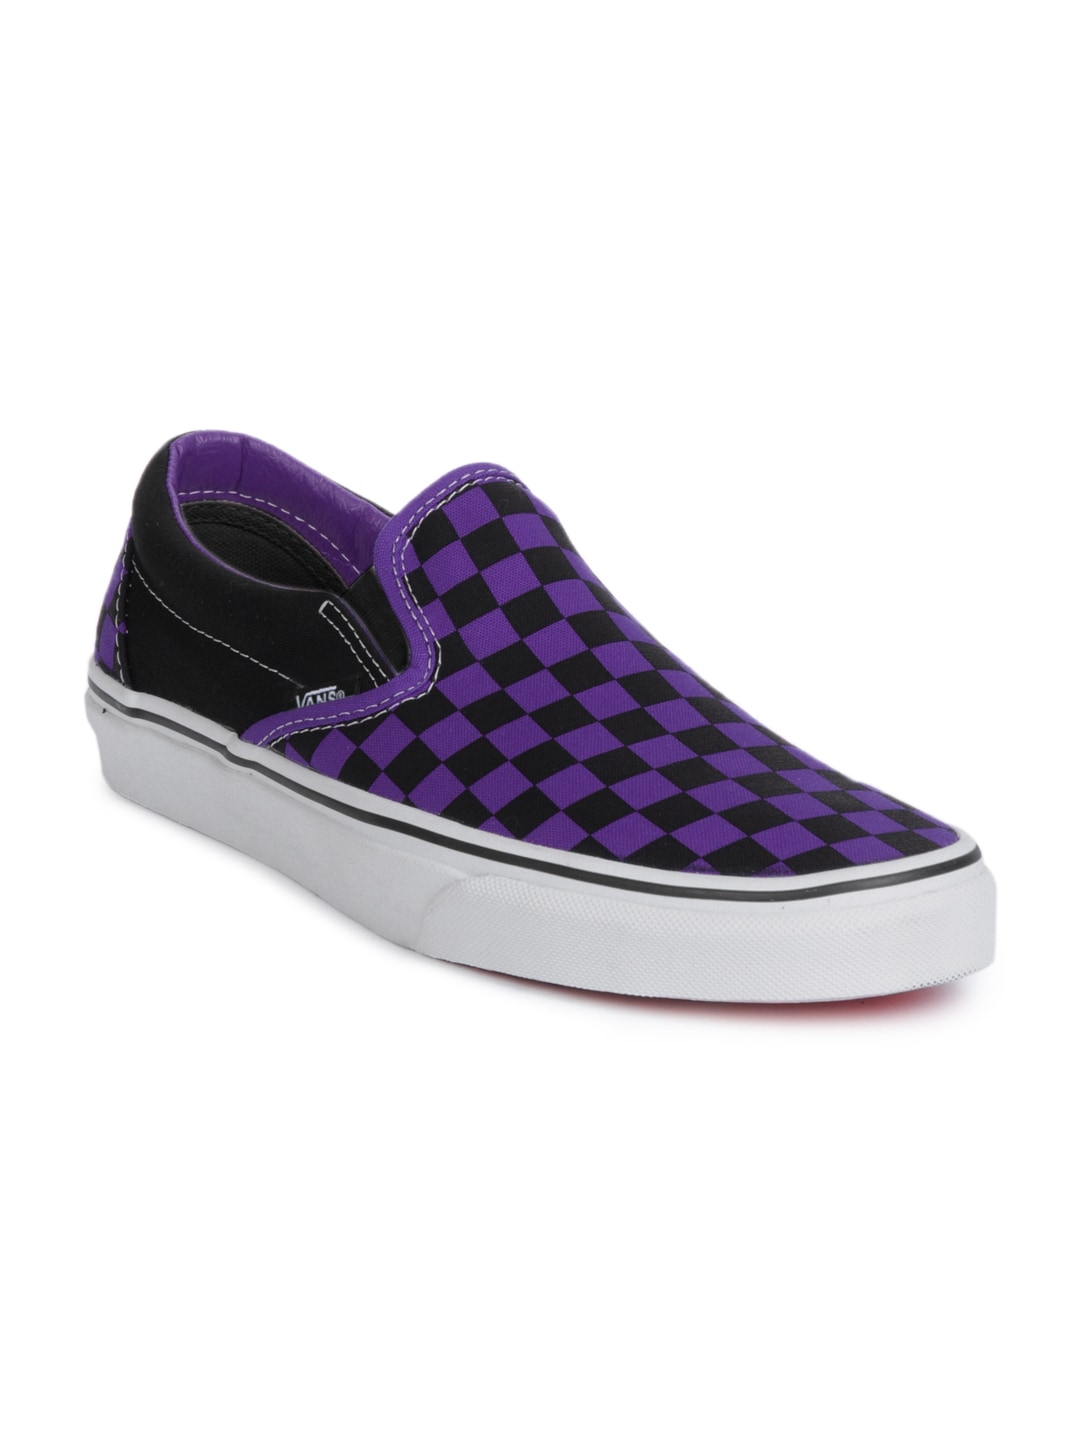 Vans Men Classic Slip-On Purple & Black Shoes